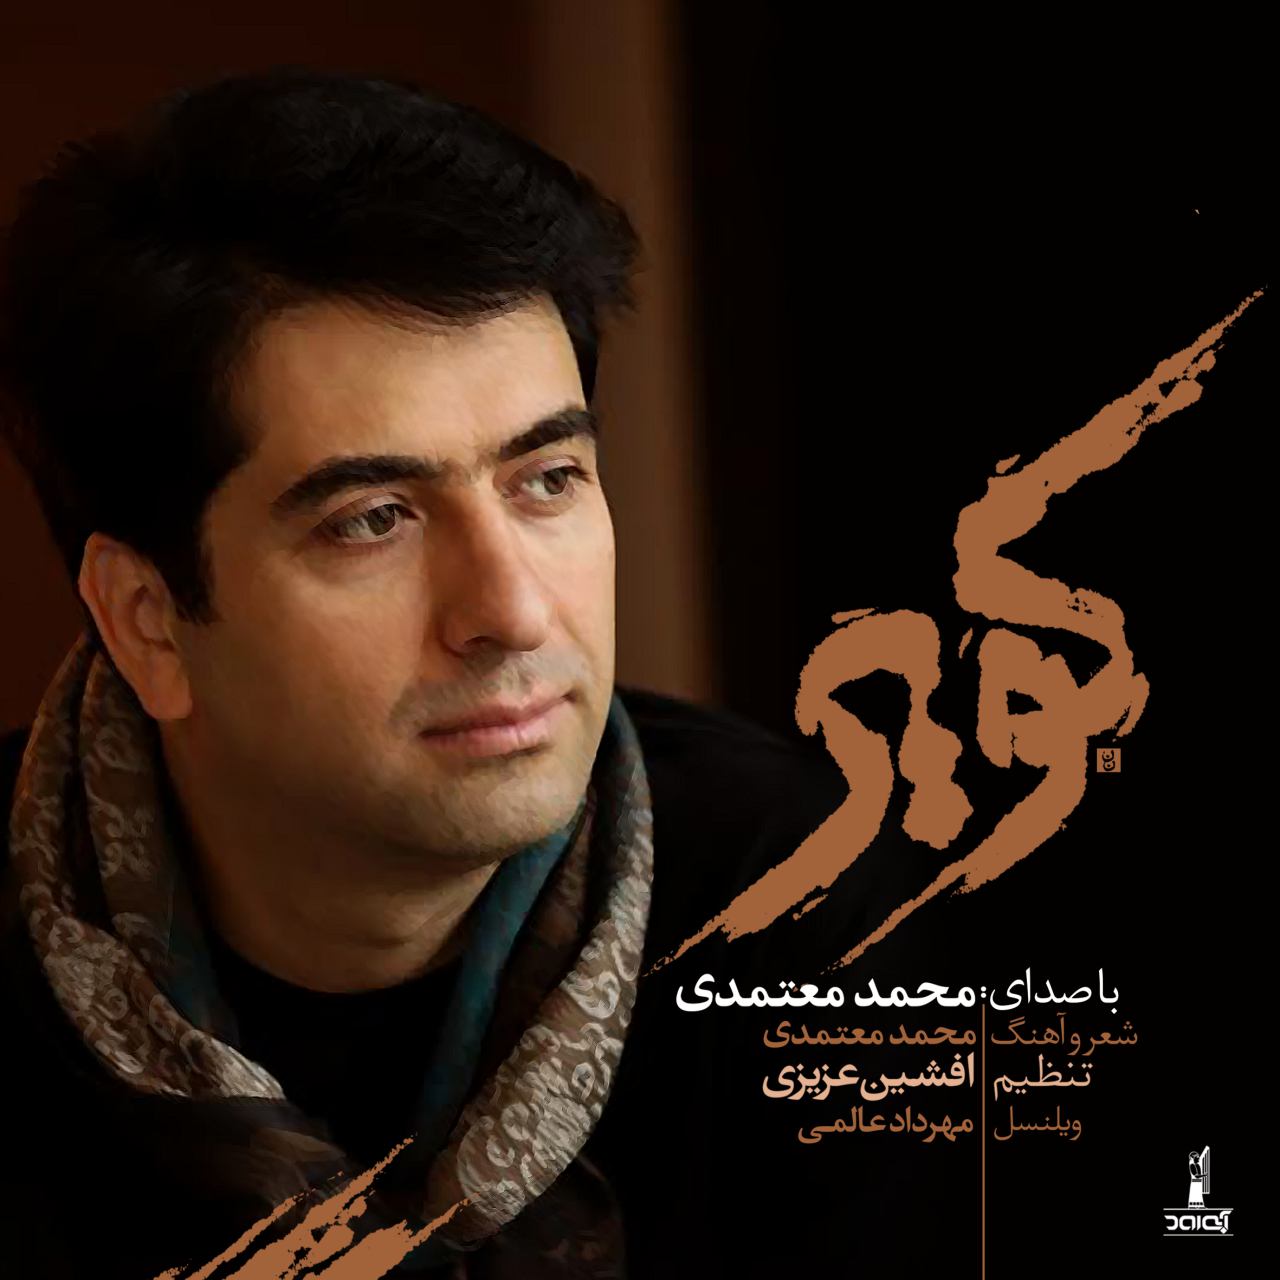 محمد معتمدی - سیانور کویر